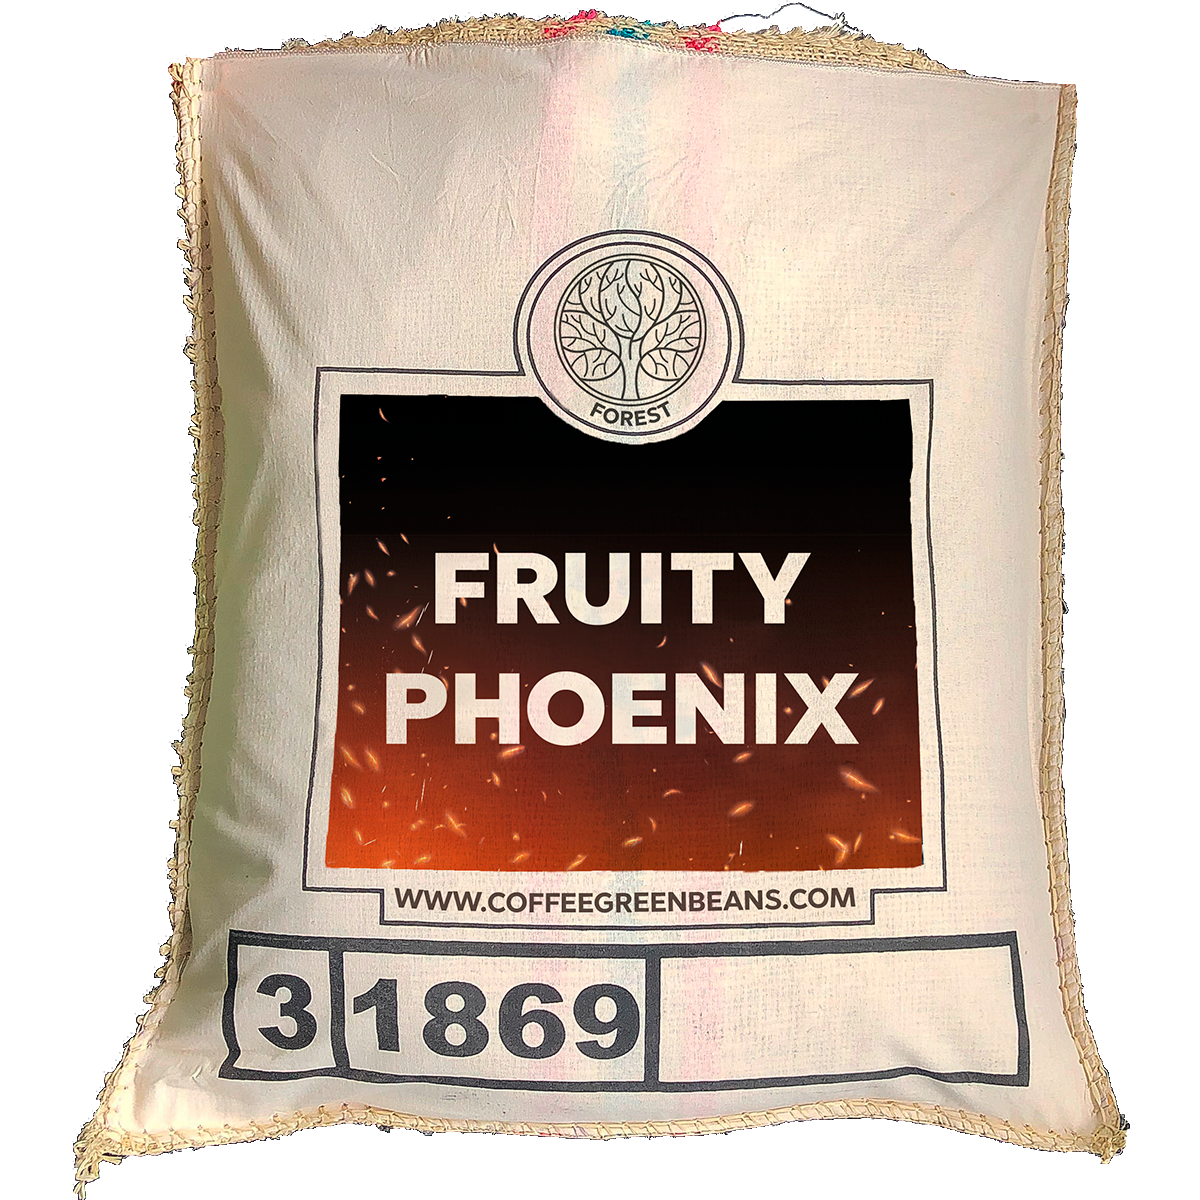 FRUITY PHOENIX - Forest Coffee 